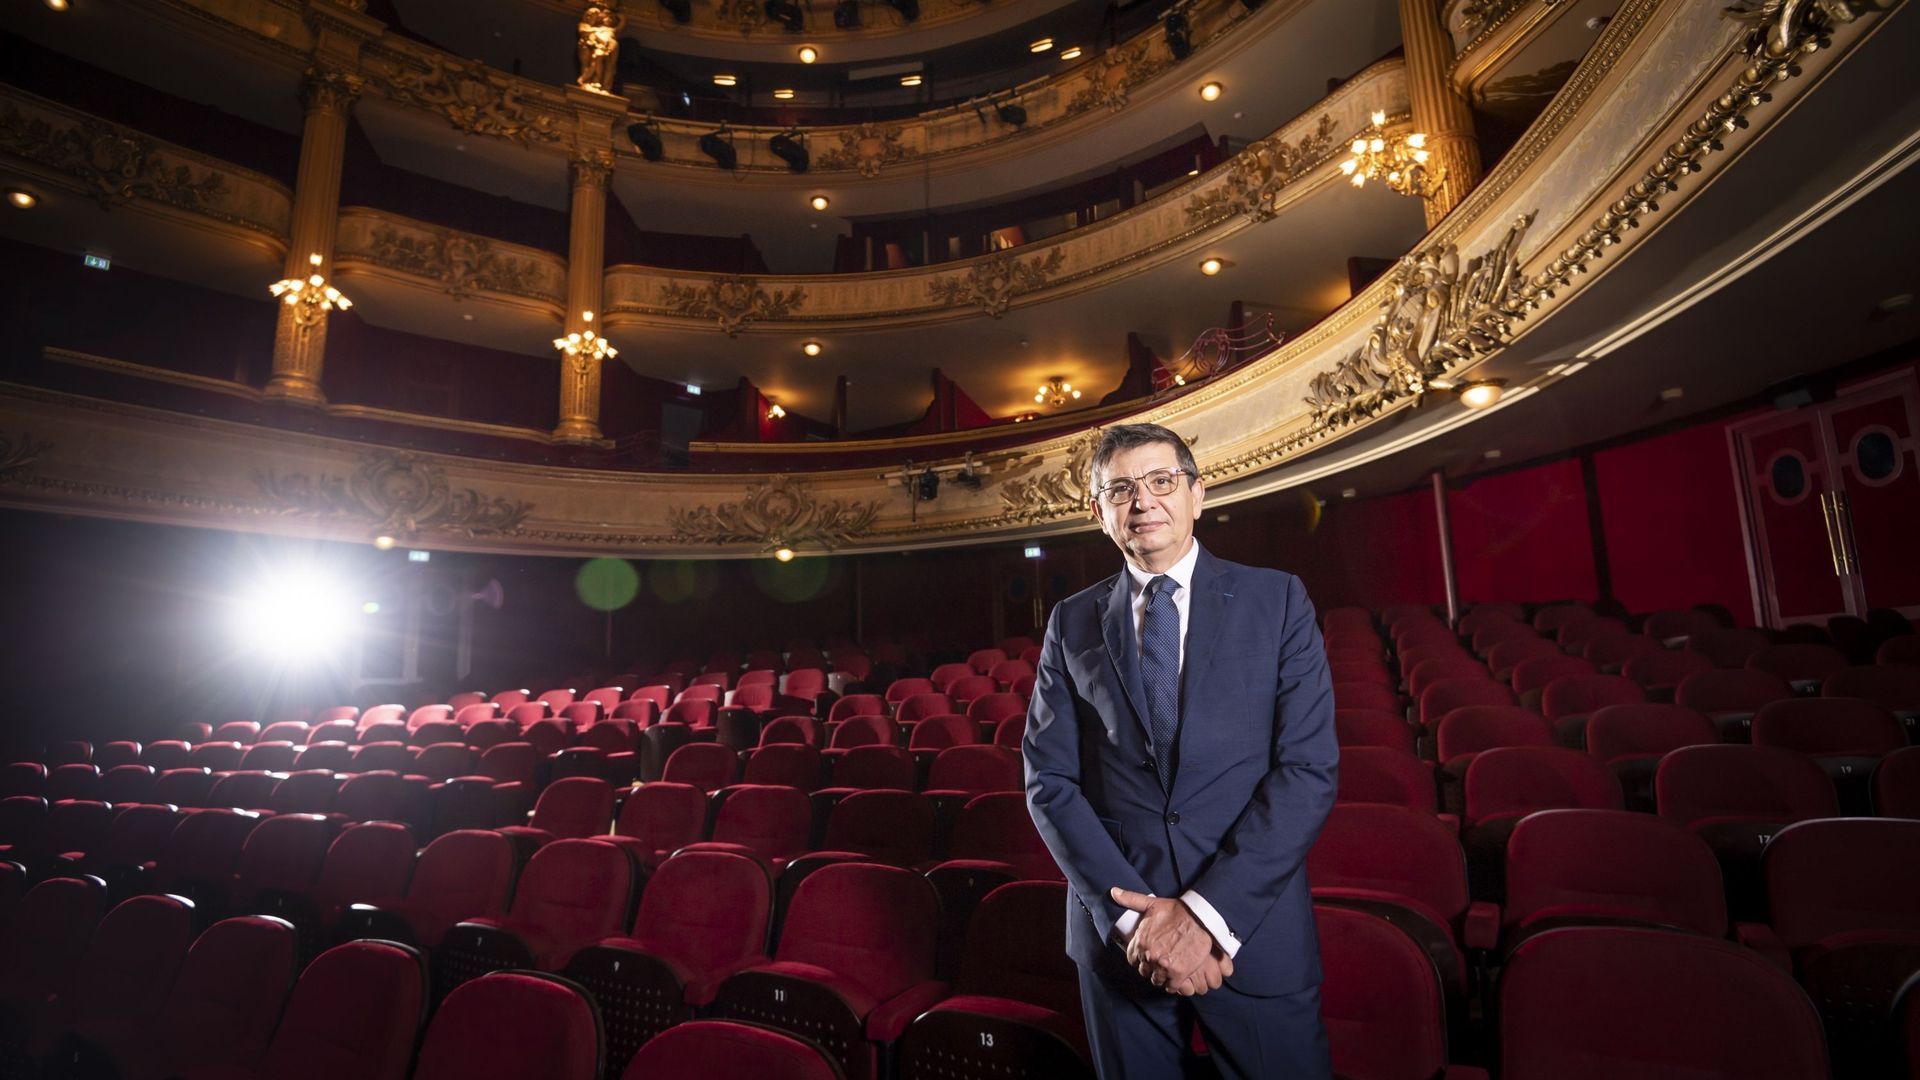 Stefano Pace est le nouveau directeur général et artistique de l'Opéra Royal de Wallonie-Liège